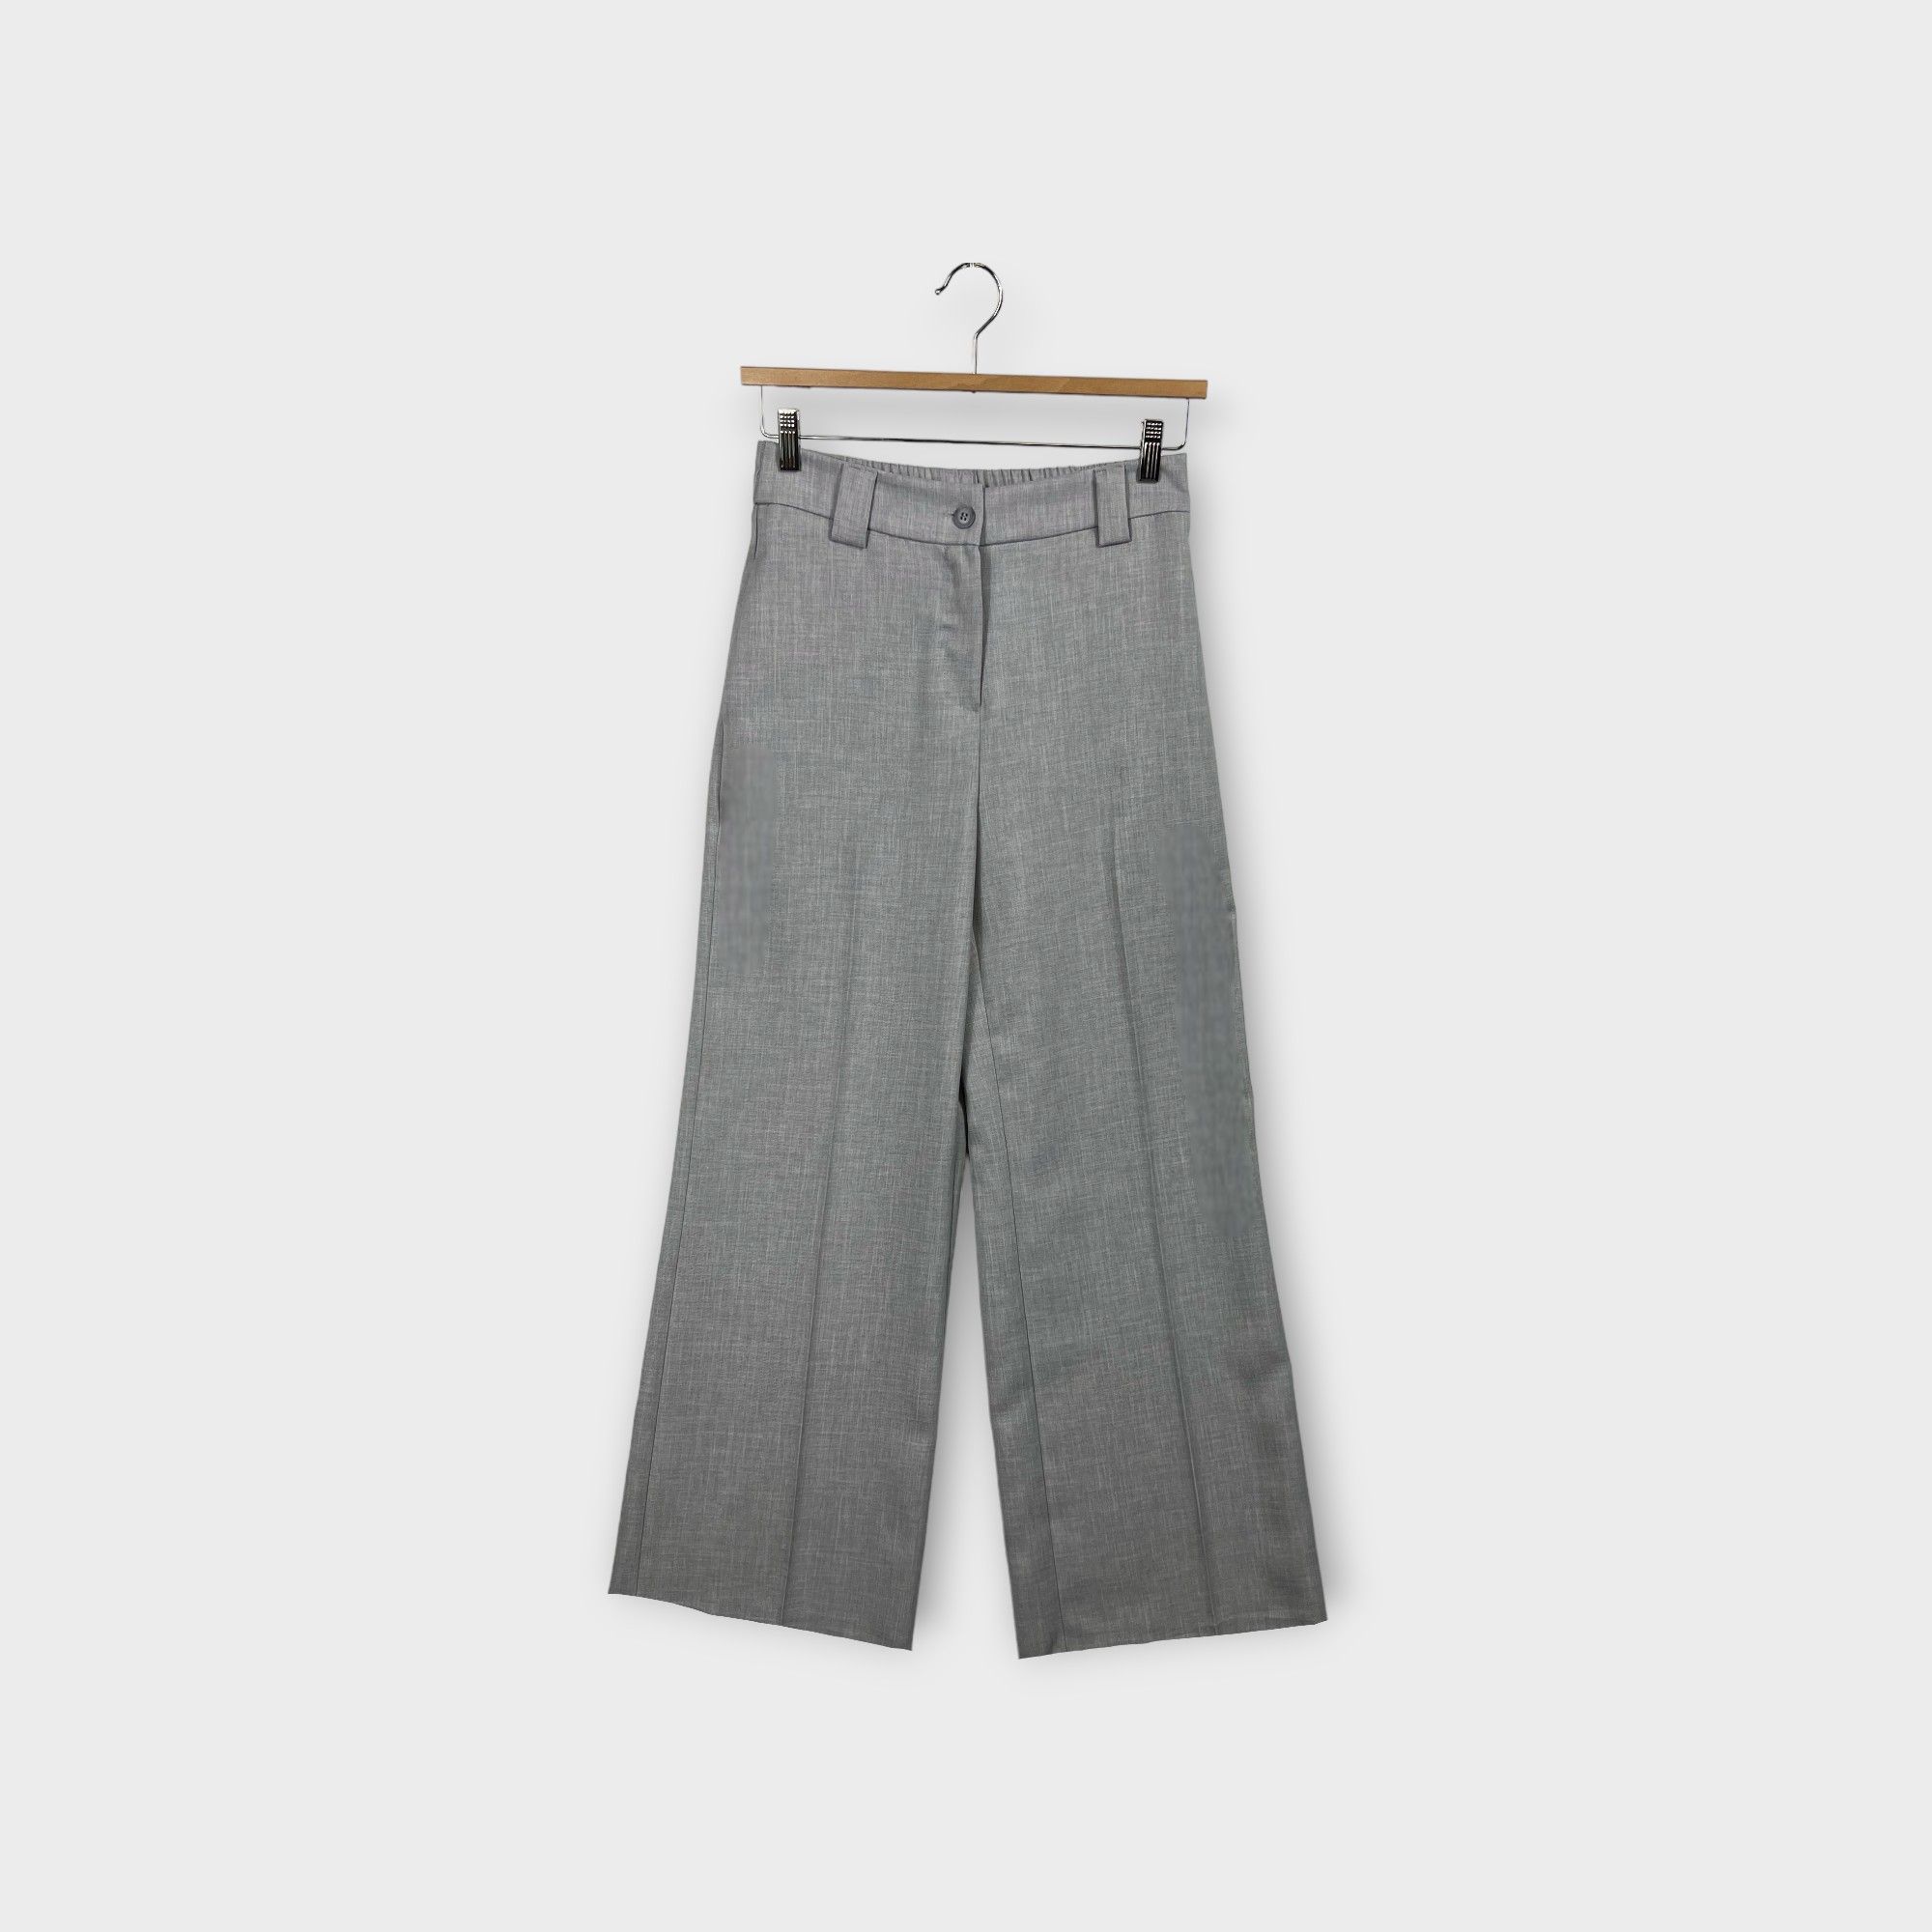 images/virtuemart/product/HELLEH pantaloni donna modello palazzo in tessuto tecnico diagonale colore grigio 1.jpg